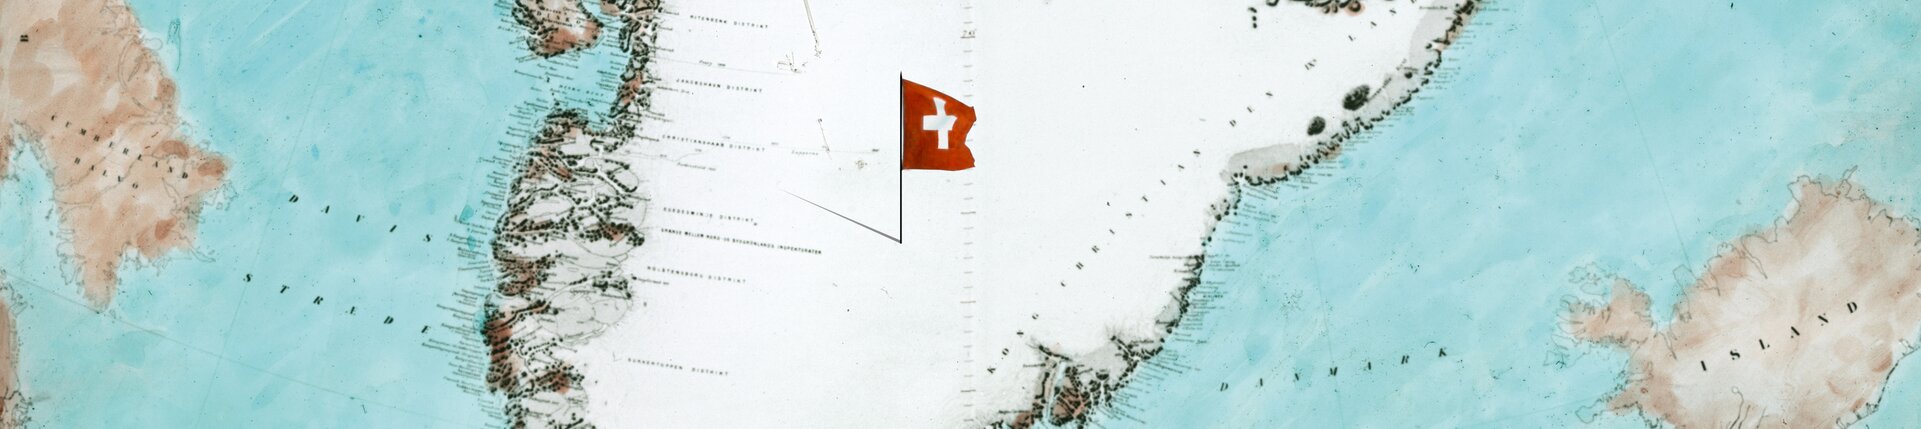 The key visual of the exhibition "Greenland 1912" is a historical map of Greenland with a small Swiss flag. | © Keyvisual der Ausstellung "Grönland 1912" - zu sehen eine alte Grönlandkare mit Schweizerflagge